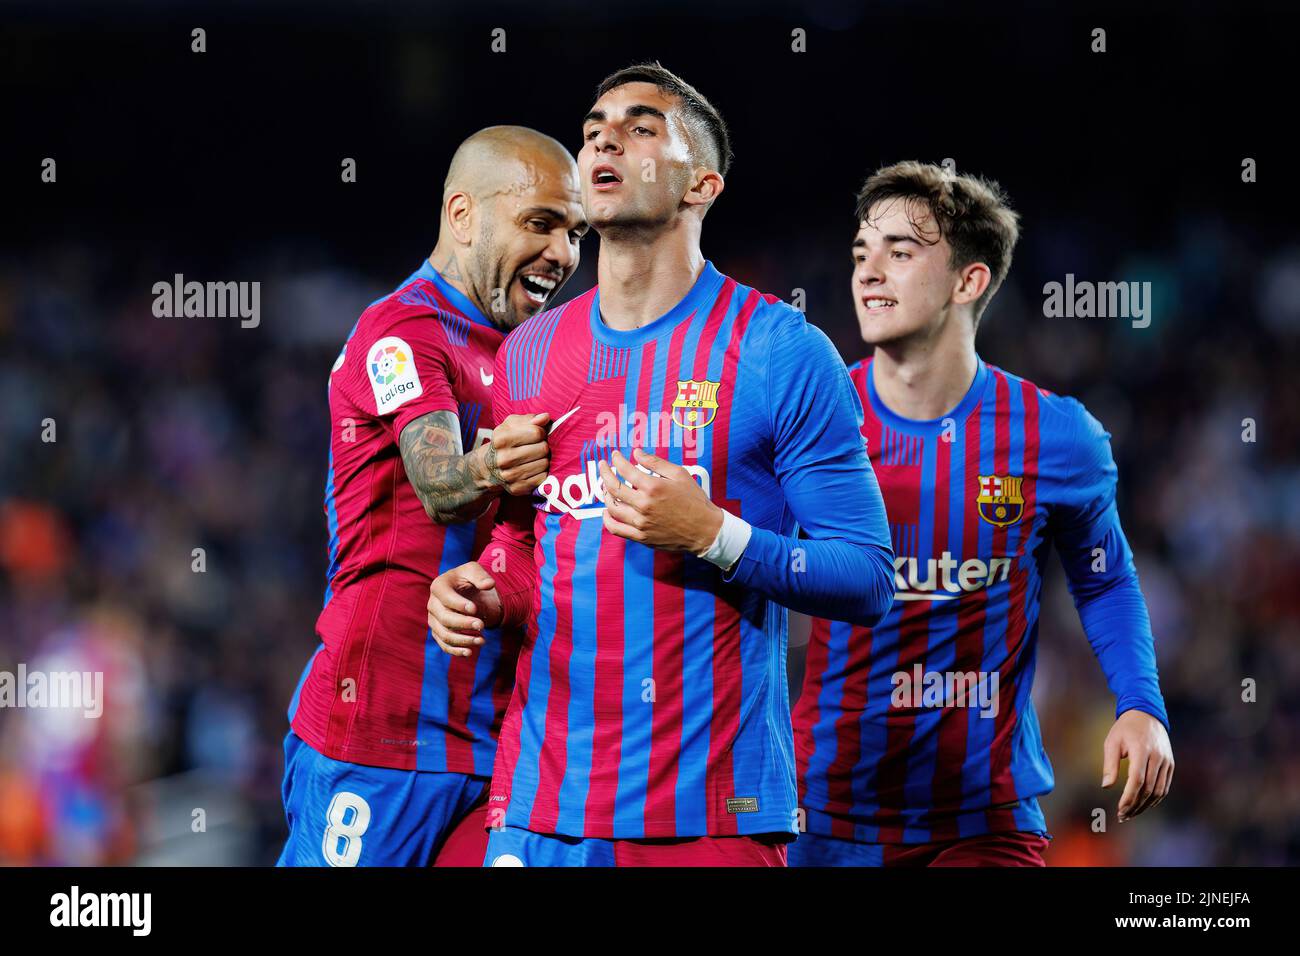 BARCELONA - MAYO 1: Ferran Torres celebra tras marcar un gol durante el partido de Liga entre el FC Barcelona y el RCD Mallorca en el Camp Nou Stadiu Foto de stock